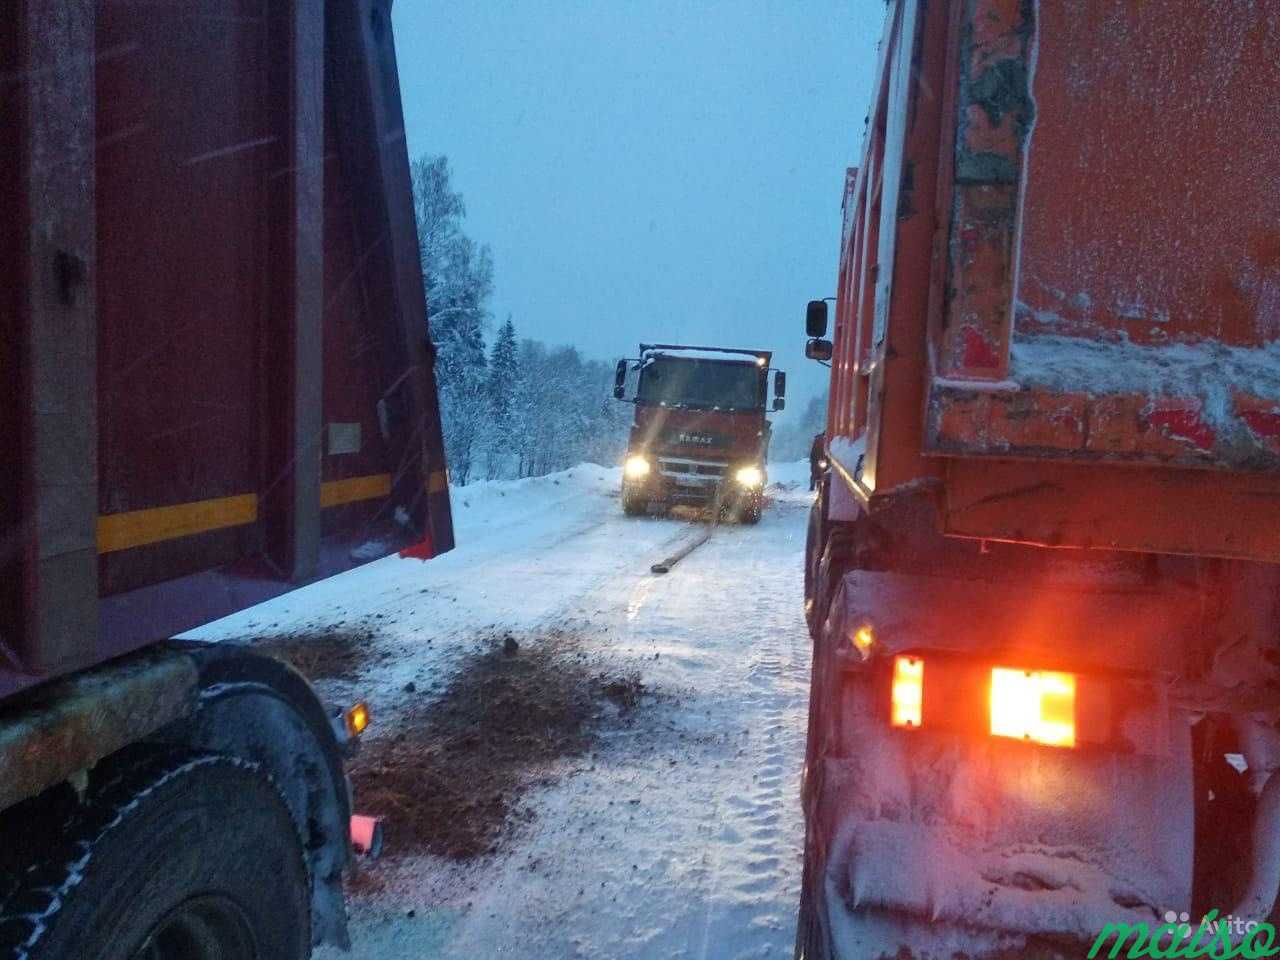 Аренда грузового авто грузовой технике самосвала в Санкт-Петербурге. Фото 1